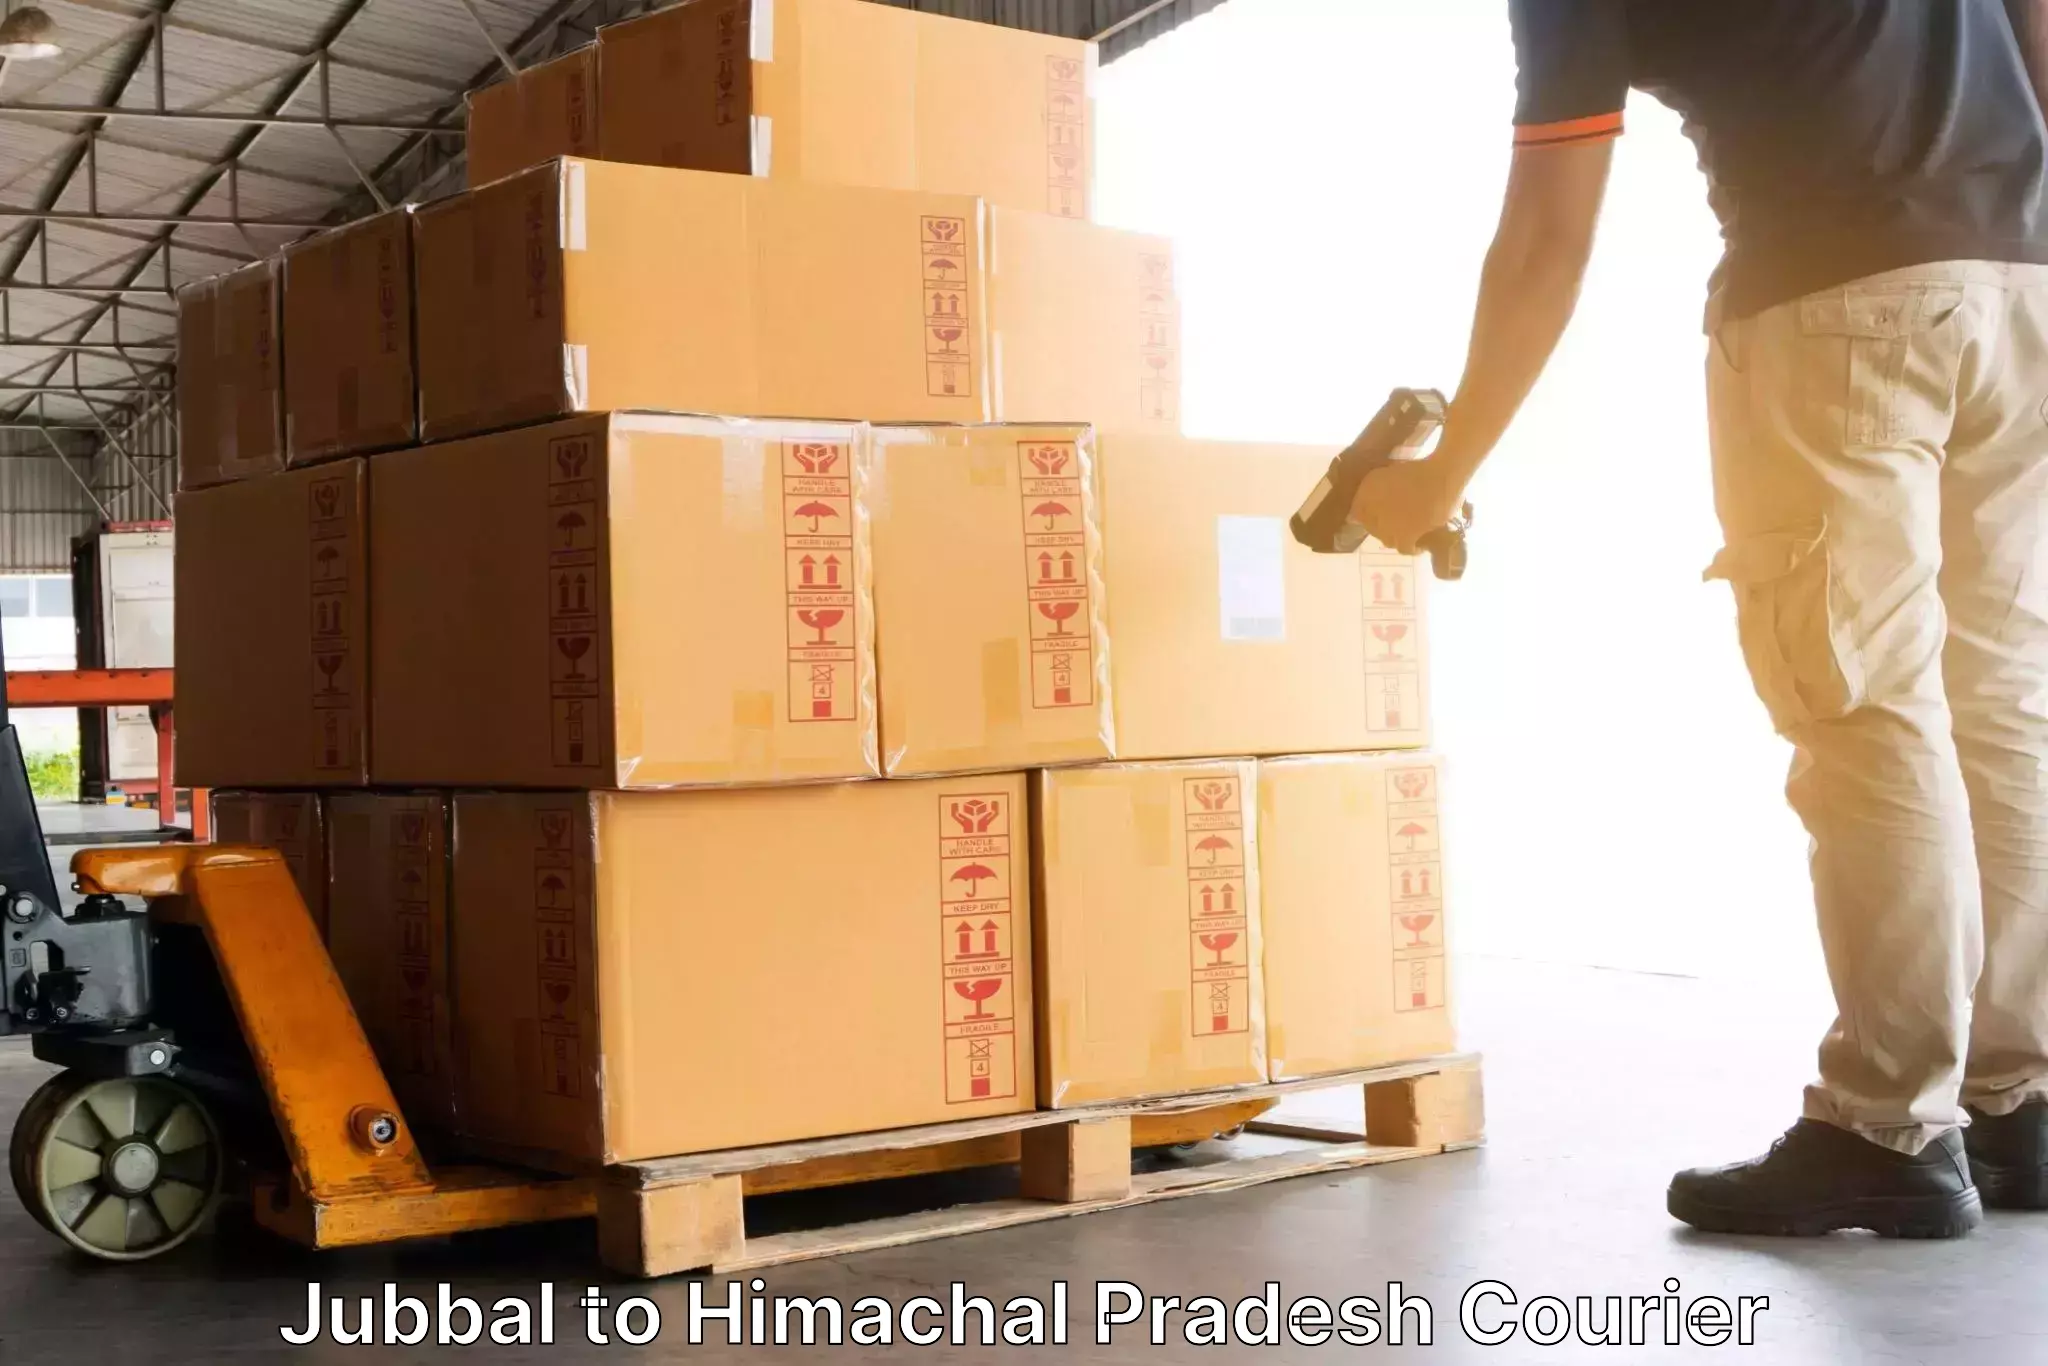 Efficient parcel service Jubbal to Amb Una